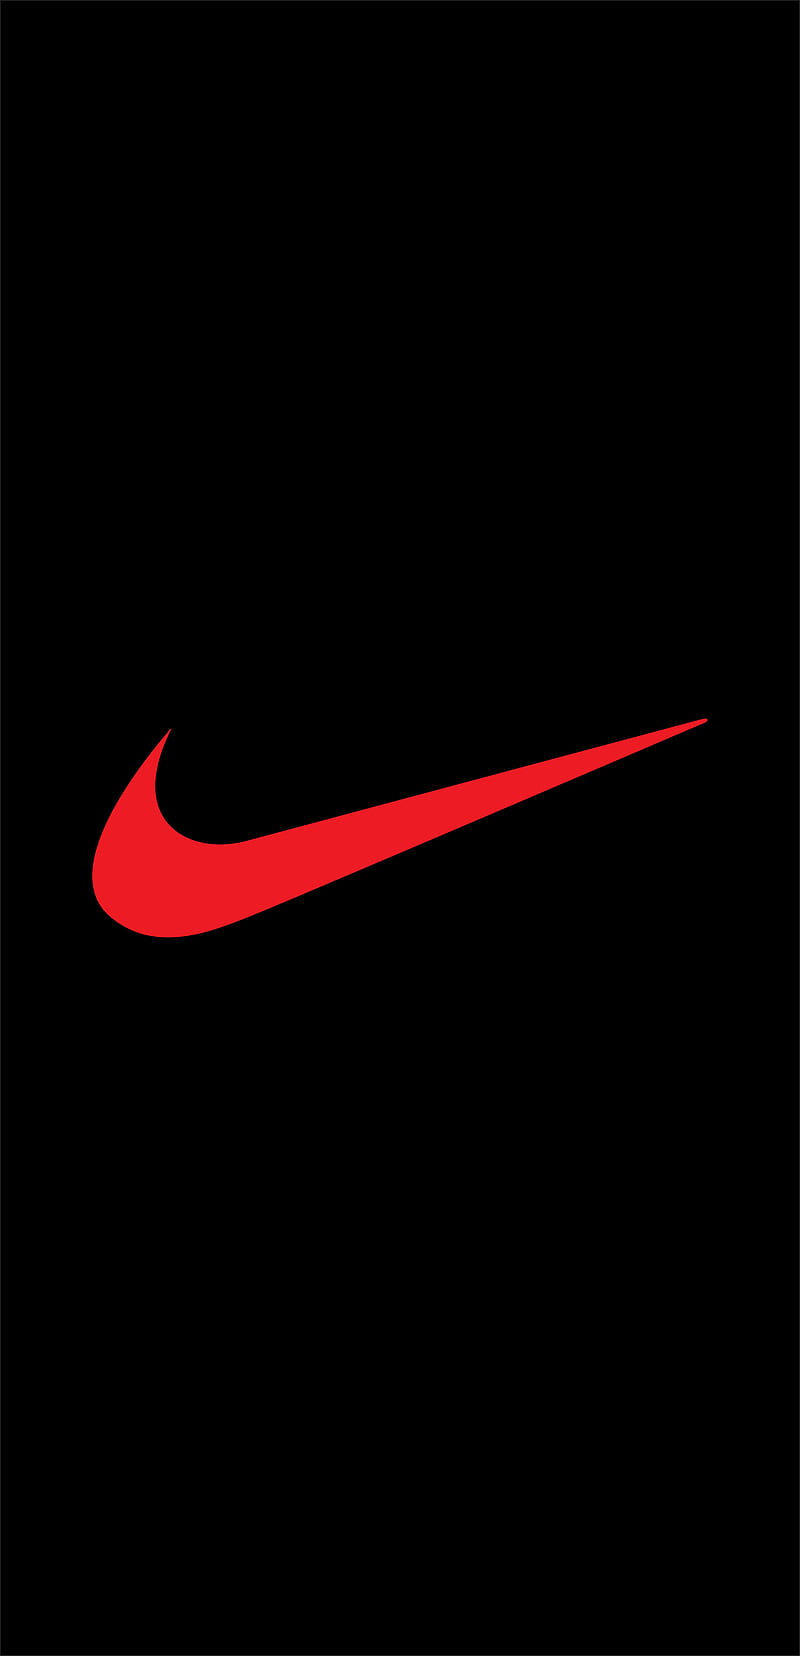 Nike air, logos, brand, nikered, phone | Peakpx